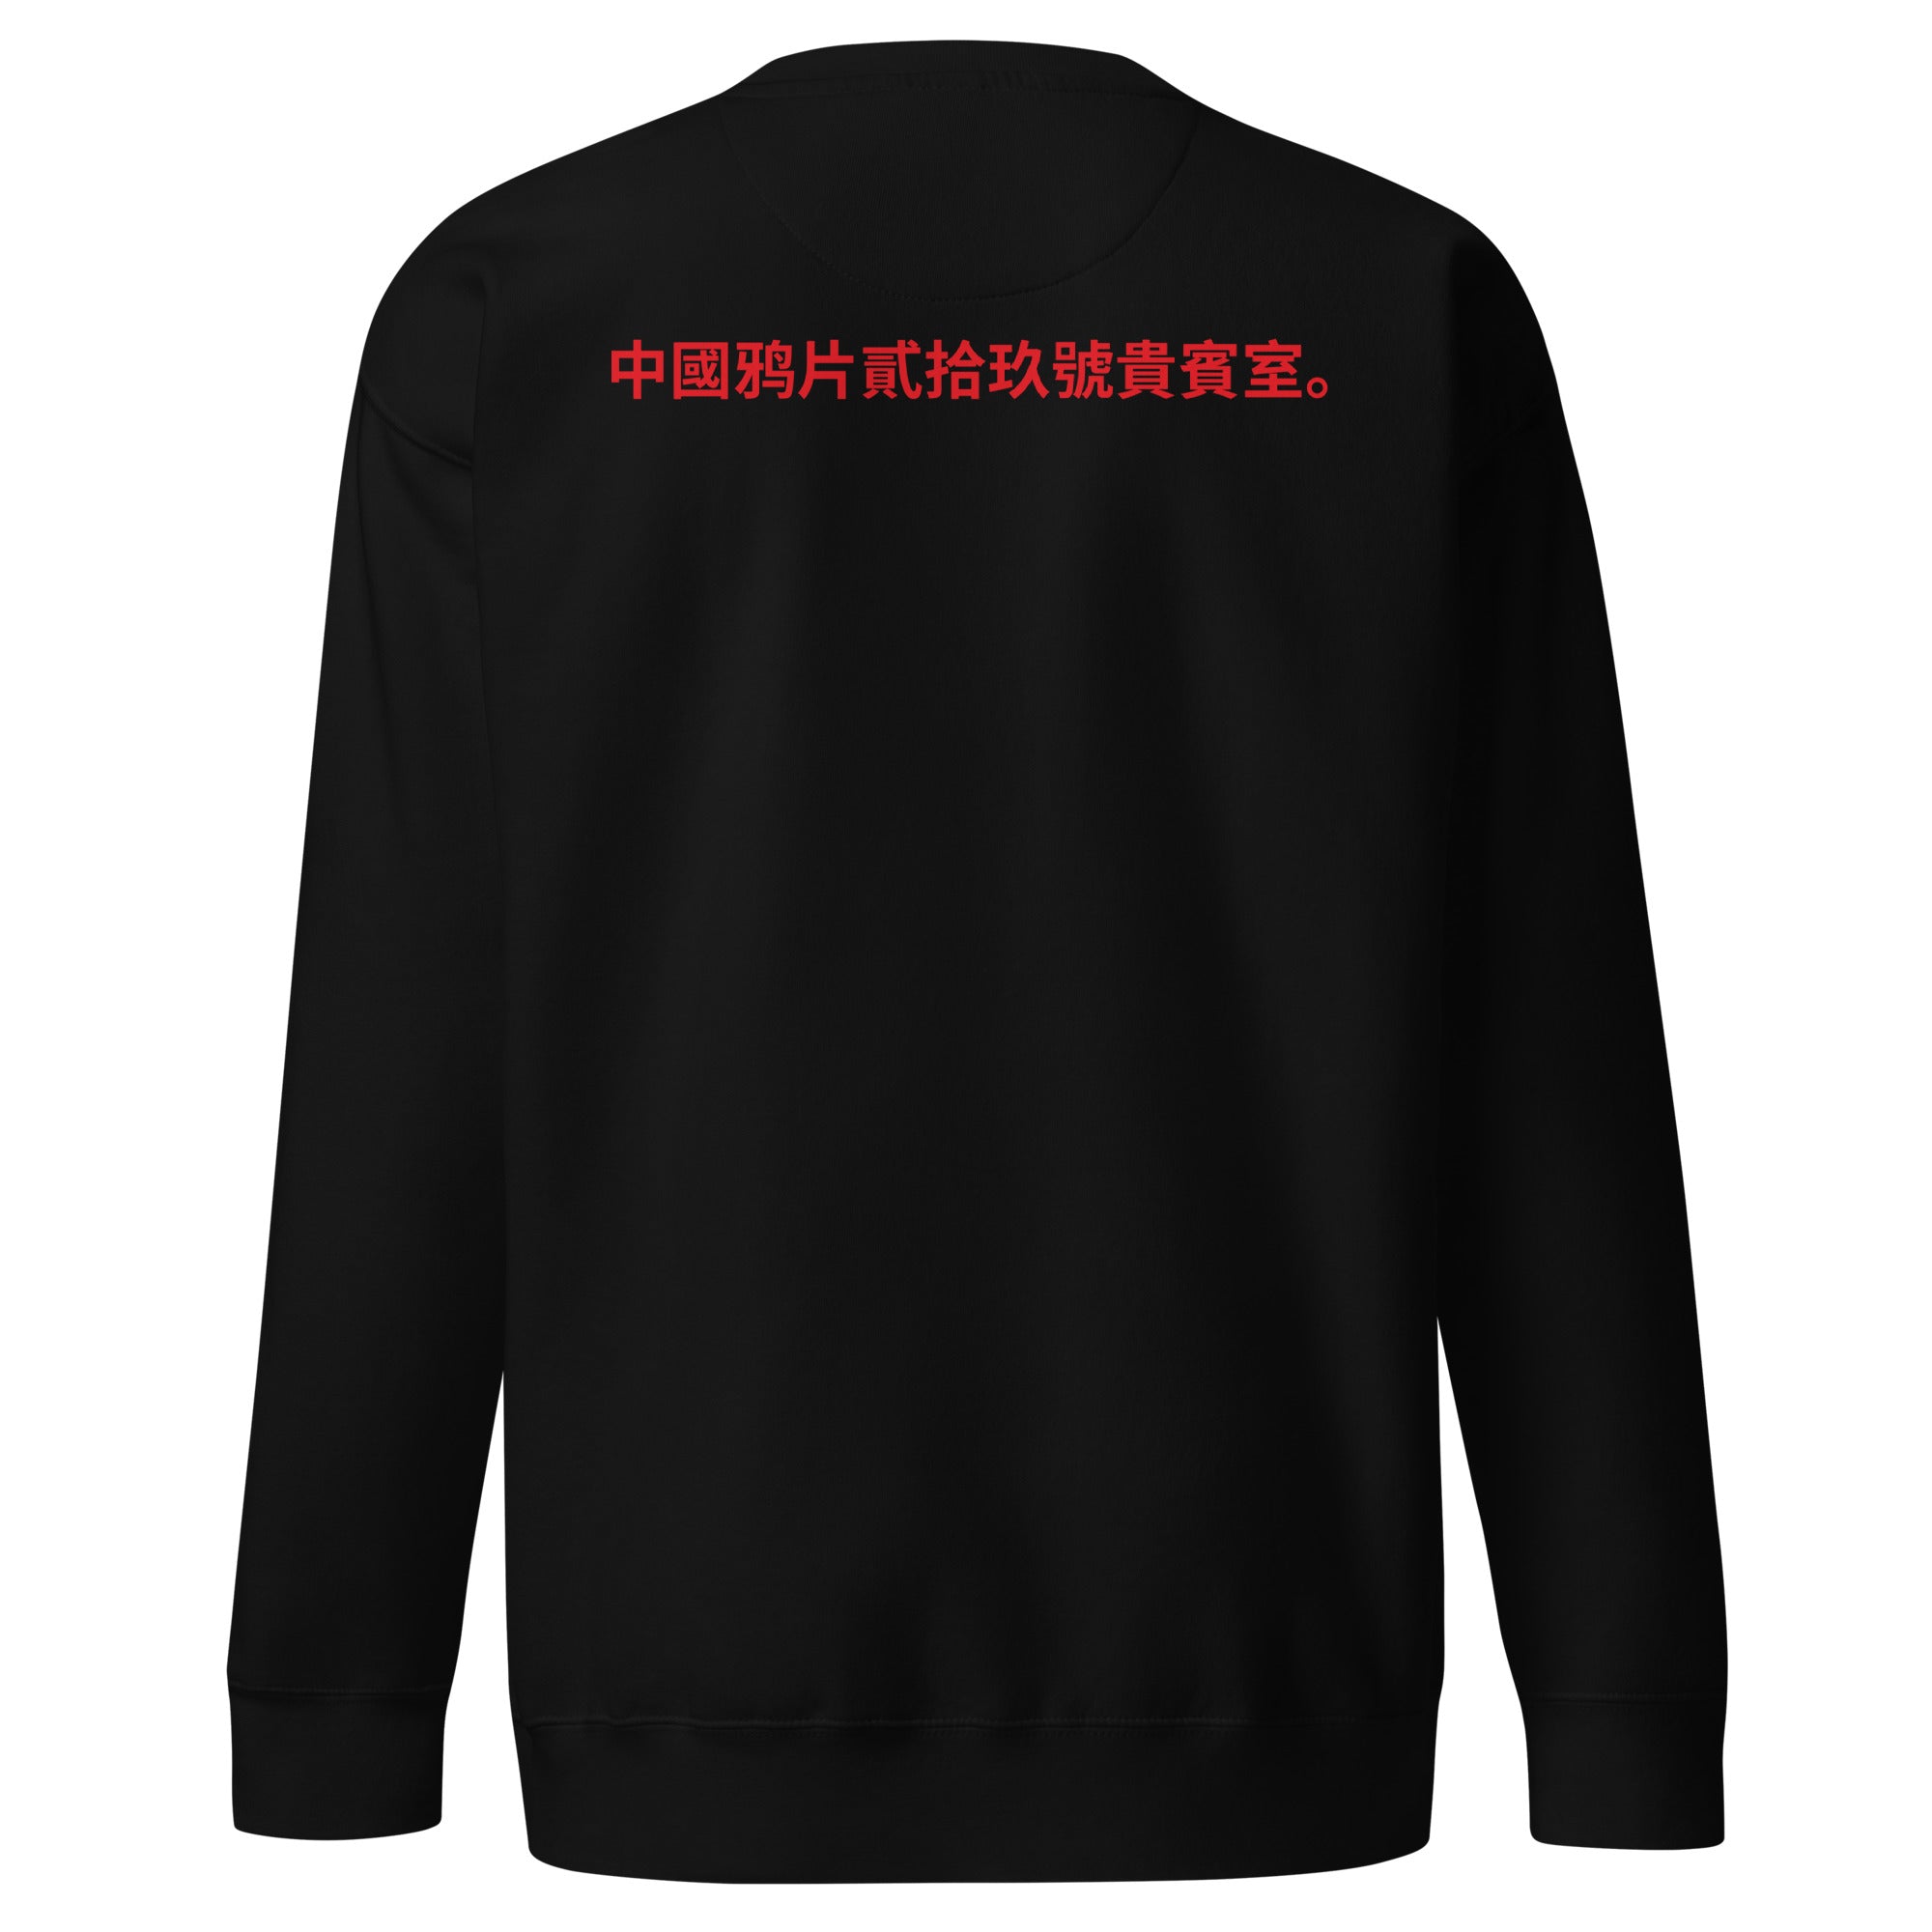 Unisex Premium Sweatshirt - Chinese Opium Lounge 29 v.2 - GRAPHIC T-SHIRTS